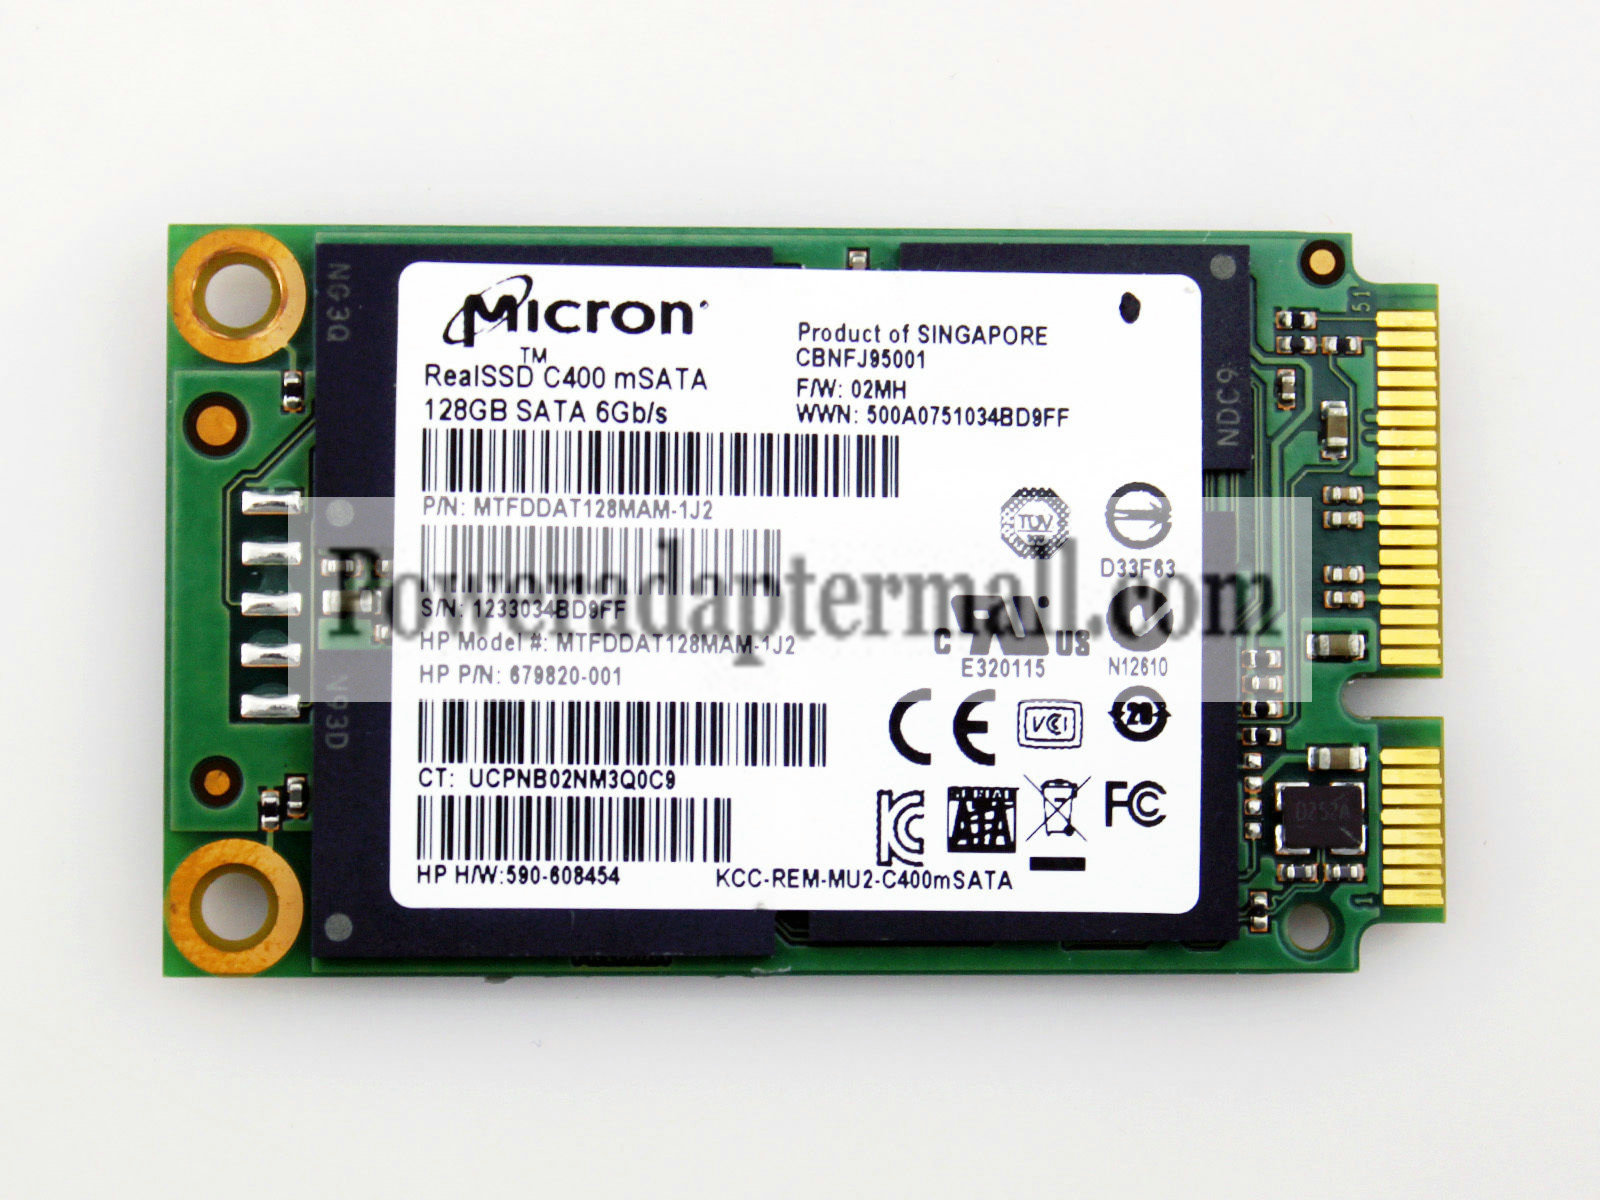 MTFDDAT128MAM-1J2 02MH Micron 128GB Solid State Drive SSD mSATA